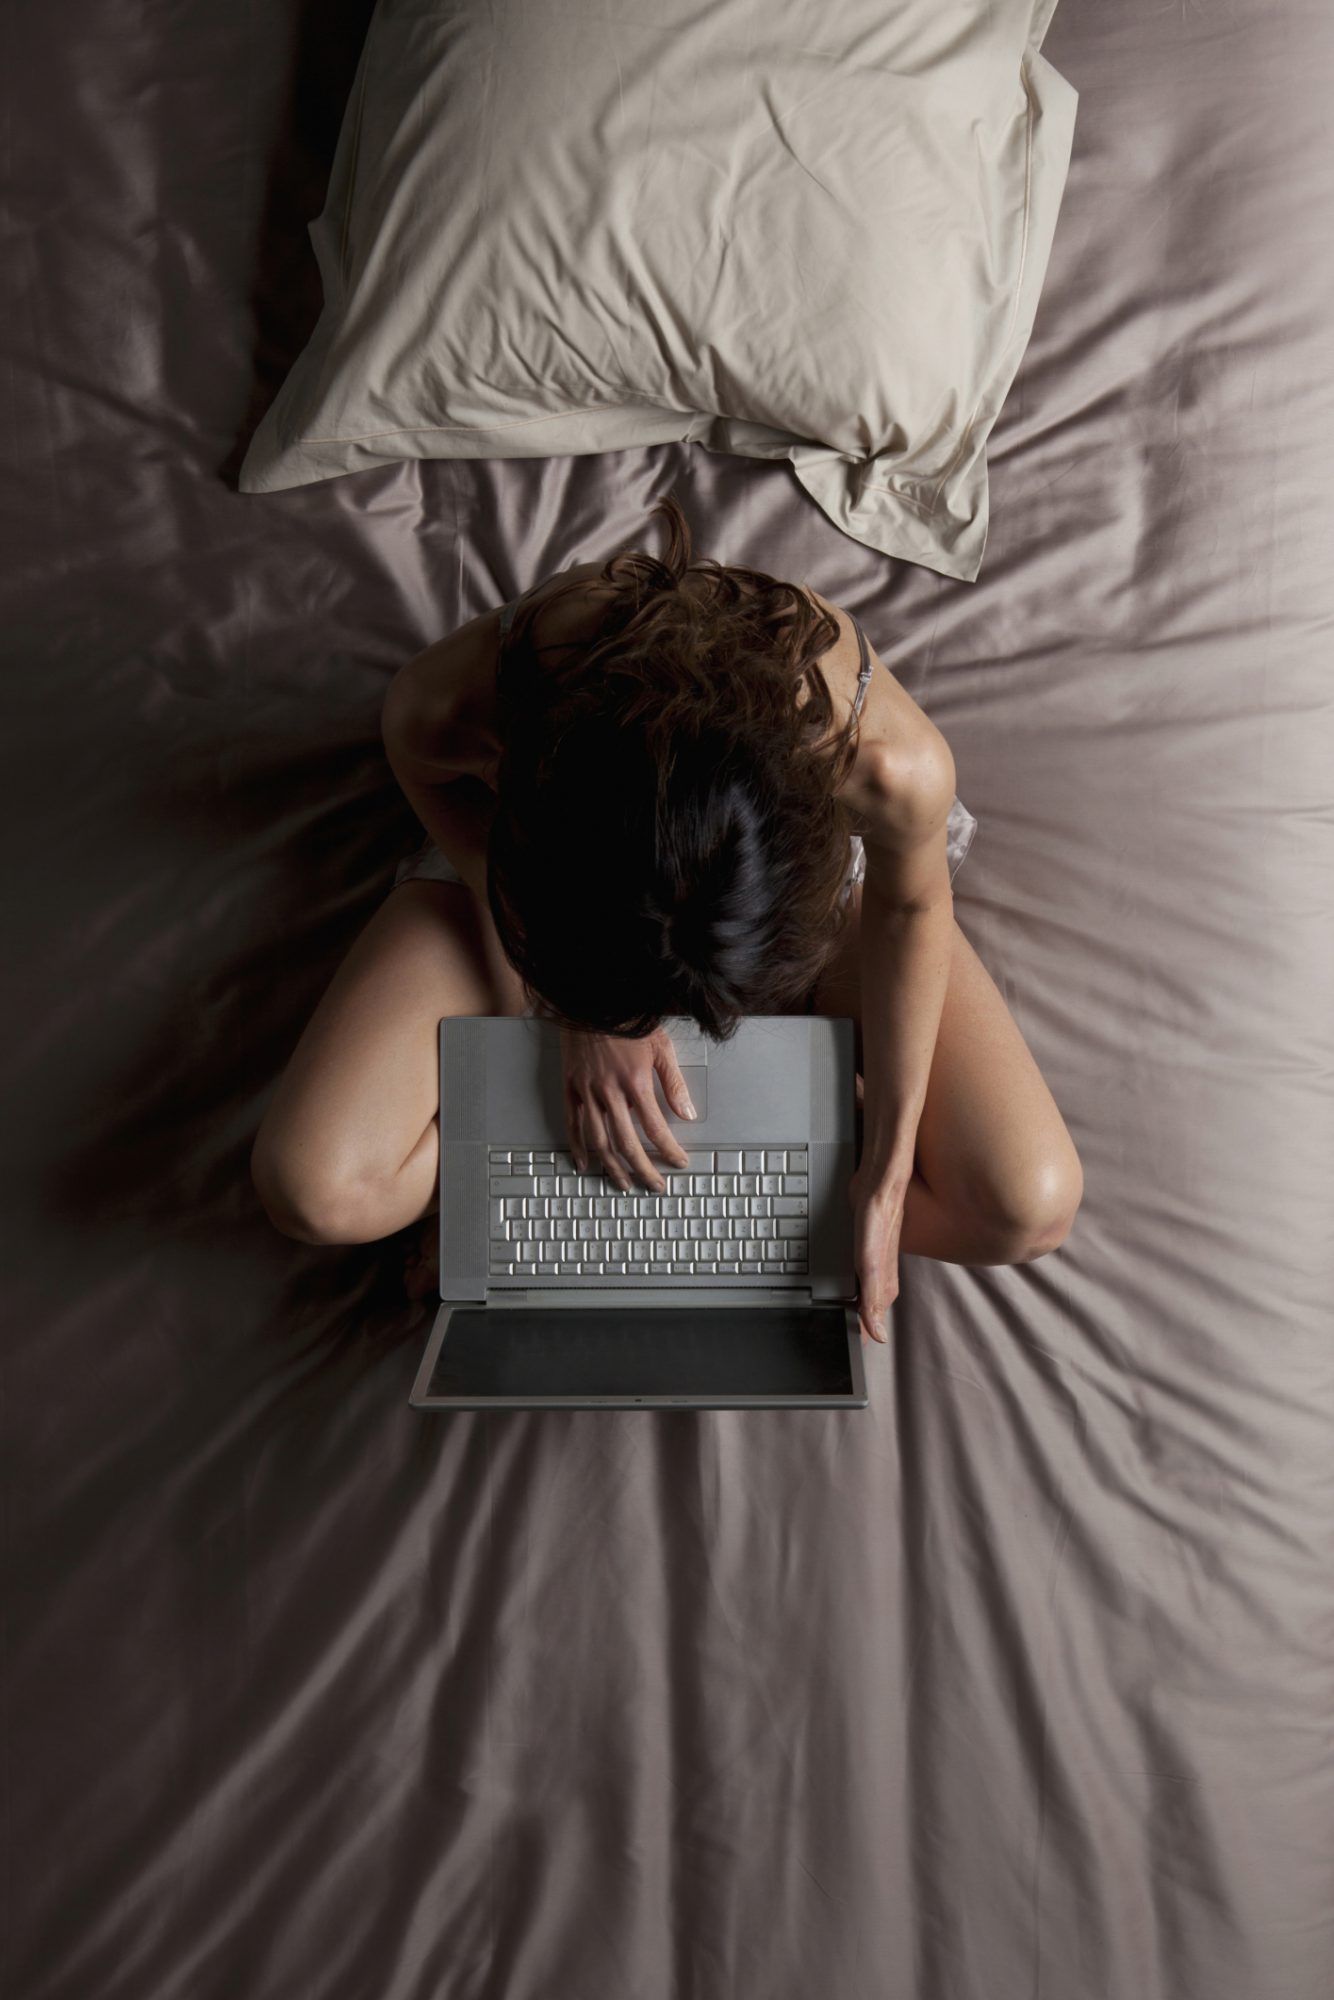 Fotografía cenital de una mujer sentada en la cama escribiendo en la computadora